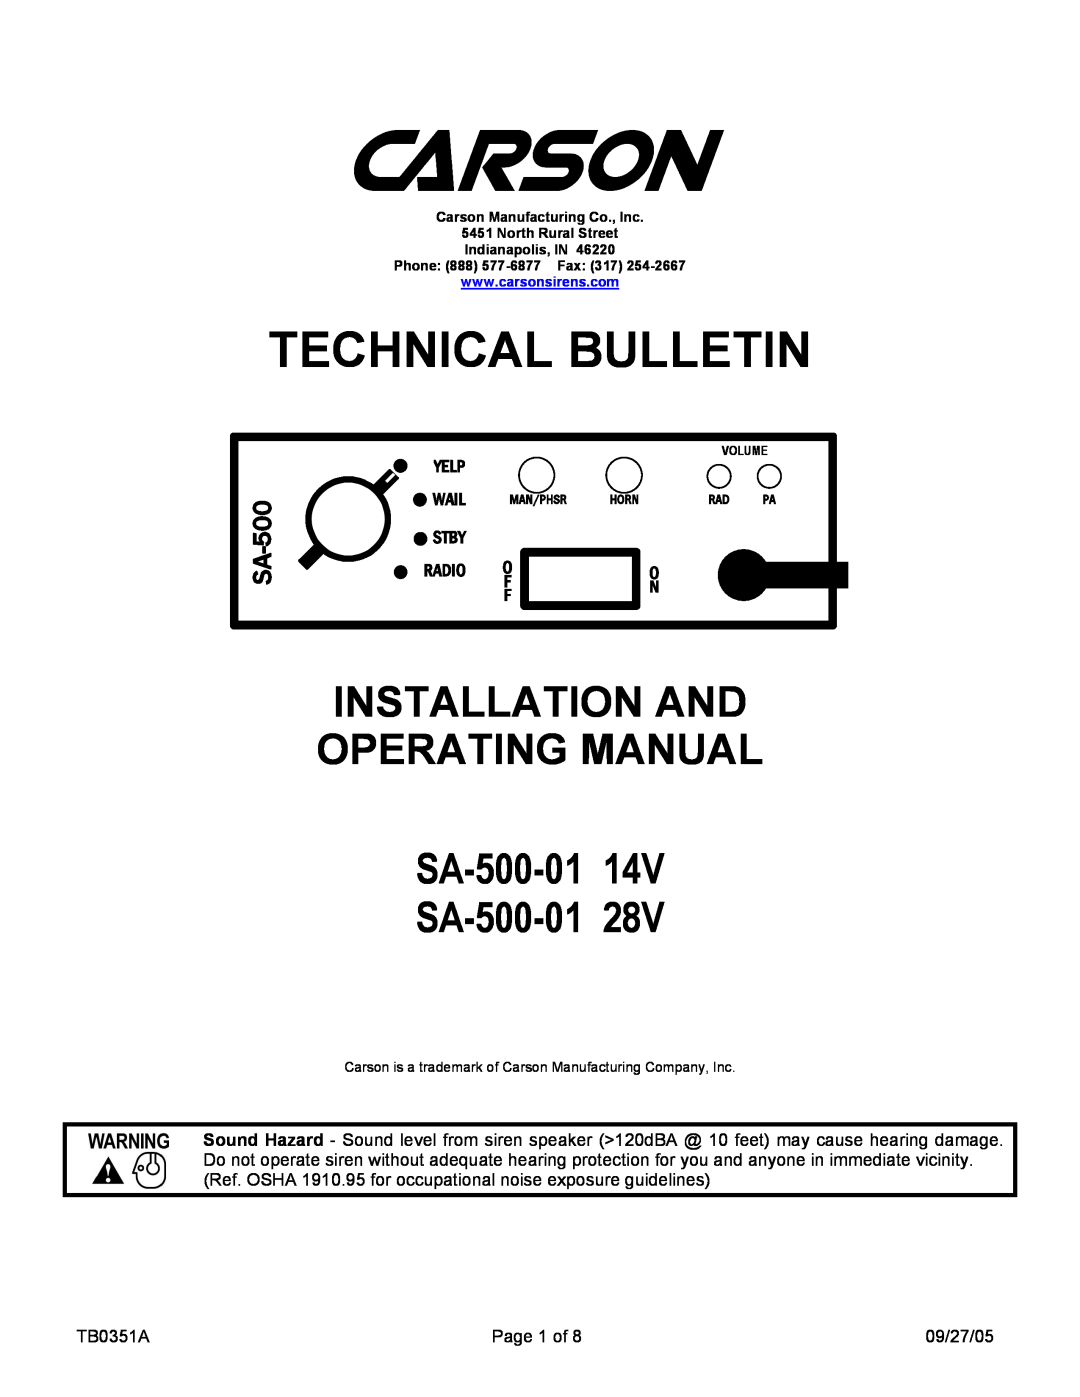 Carson SA-500-01 14V manual Technical Bulletin, INSTALLATION AND OPERATING MANUAL SA-500-0114V, SA-500-0128V, Yelp, Wail 